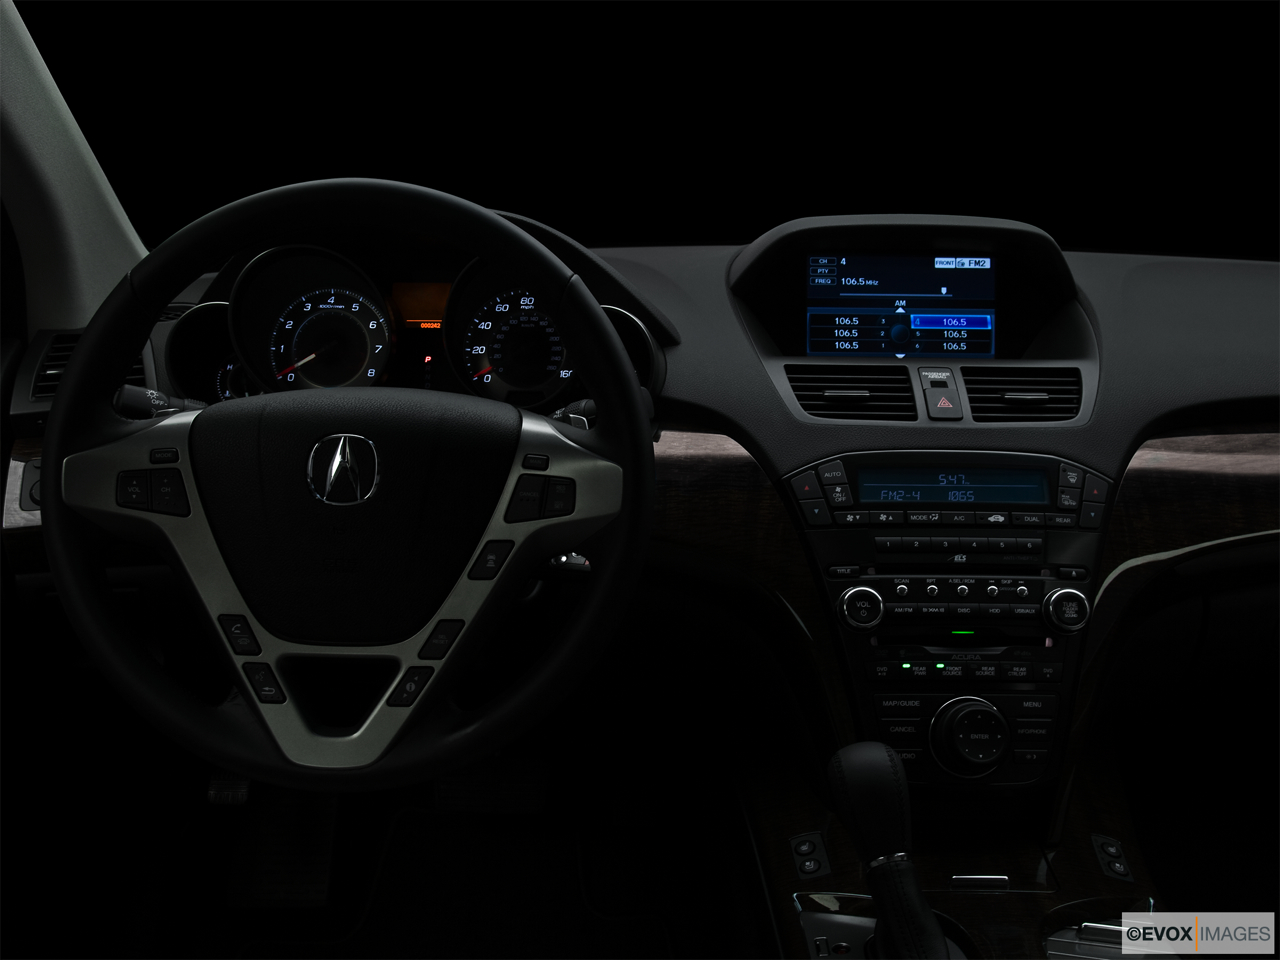 2010 Acura MDX MDX Centered wide dash shot - "night" shot. 